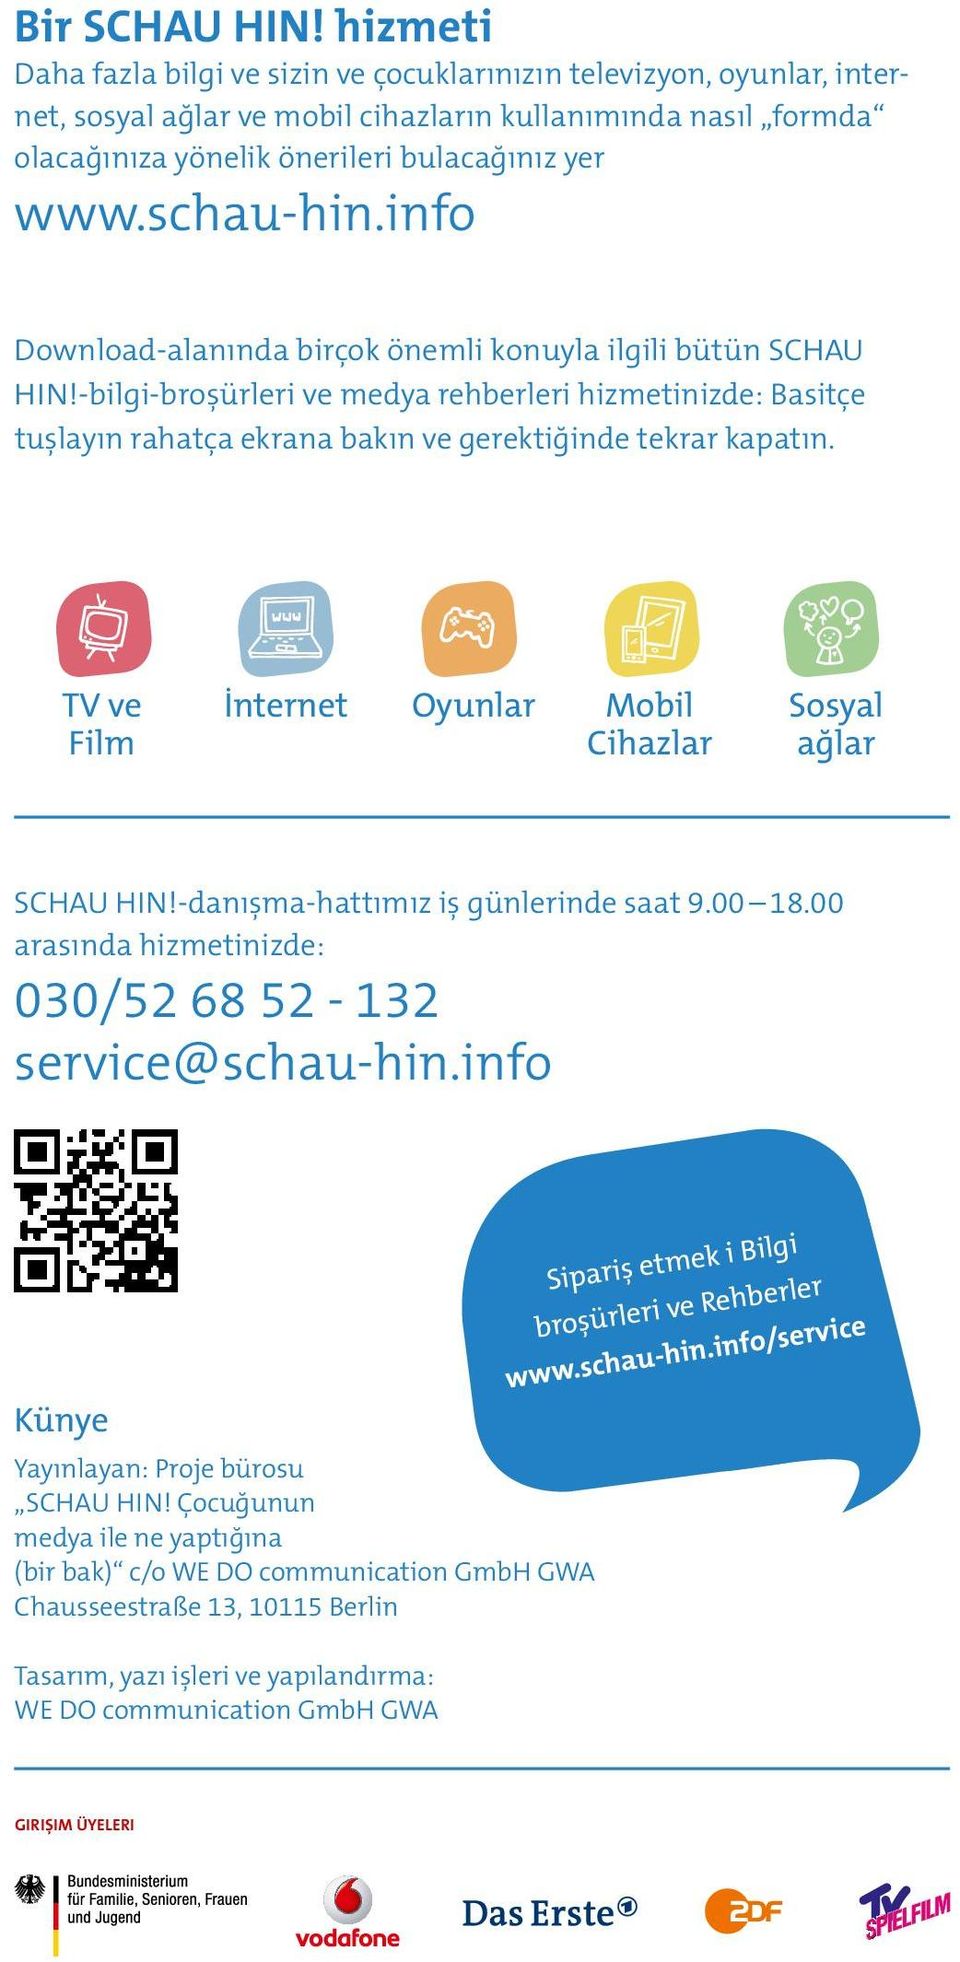 schau-hin.info Download-alanında birçok önemli konuyla ilgili bütün SCHAU HIN!-bilgi-broşürleri ve medya rehberleri hizmetinizde: Basitçe tuşlayın rahatça ekrana bakın ve gerektiğinde tekrar kapatın.